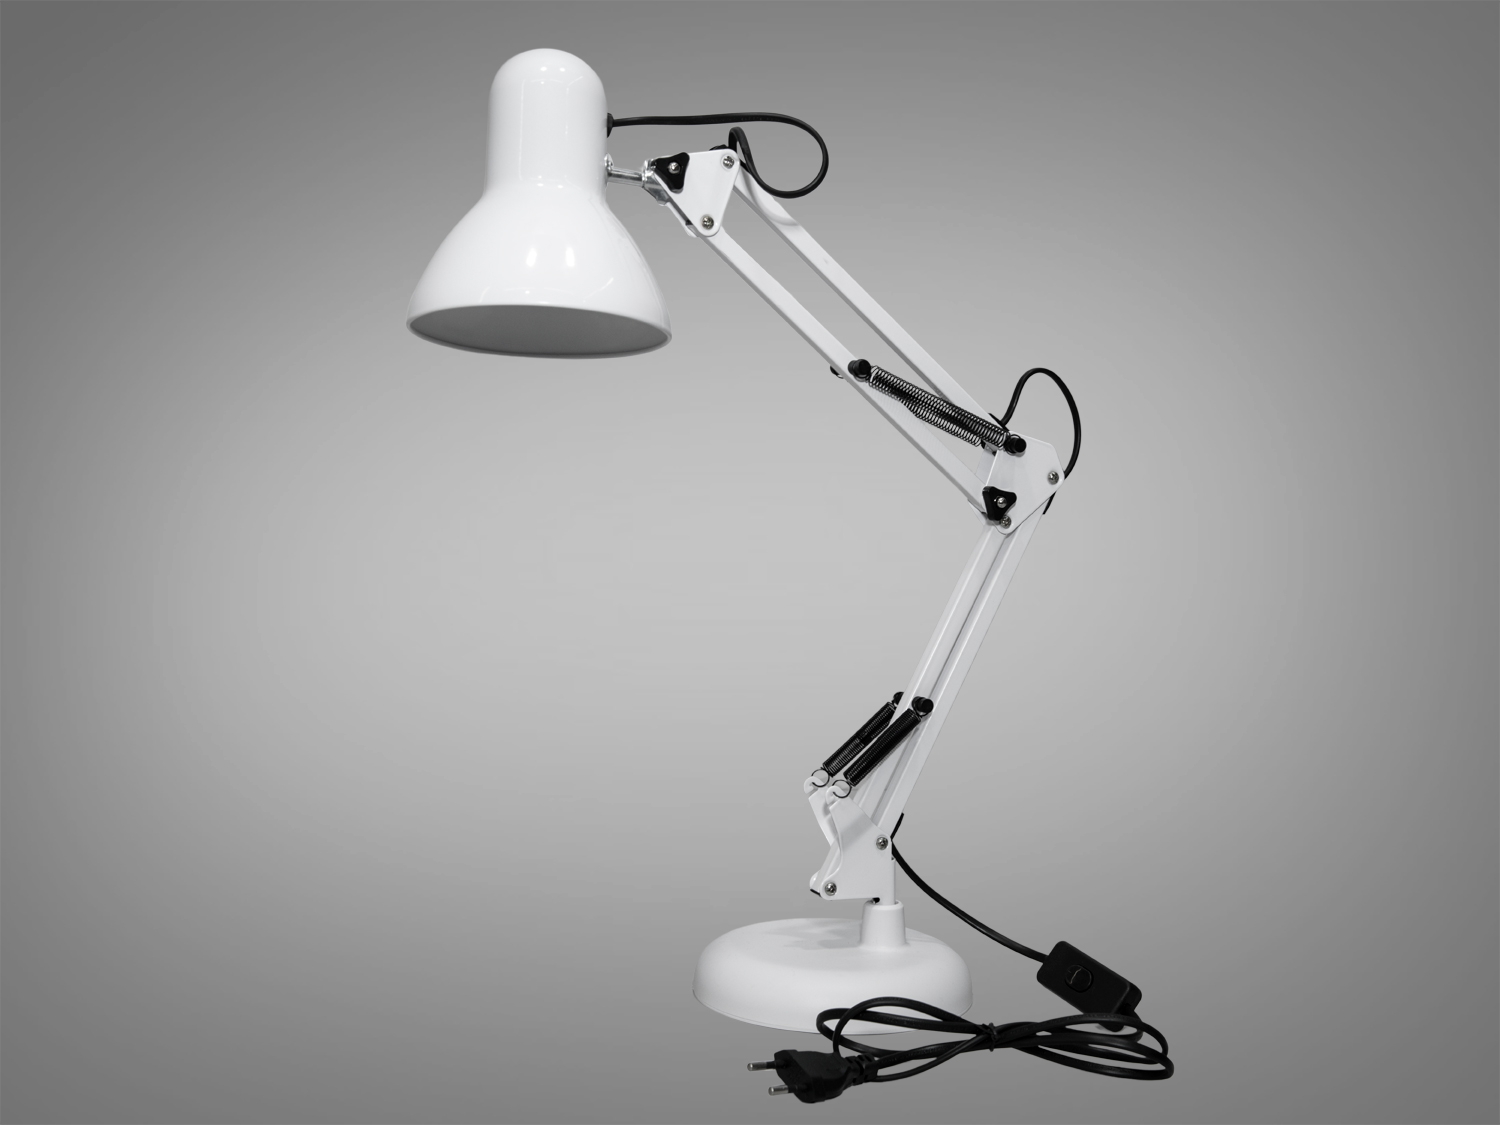 Настільна офісна лампа для робочого місця, в стилі ролика кіностудії Pixar, класичне виконання, білого кольору, купити настільну лампу дешевоНастольные лампы, Новинки